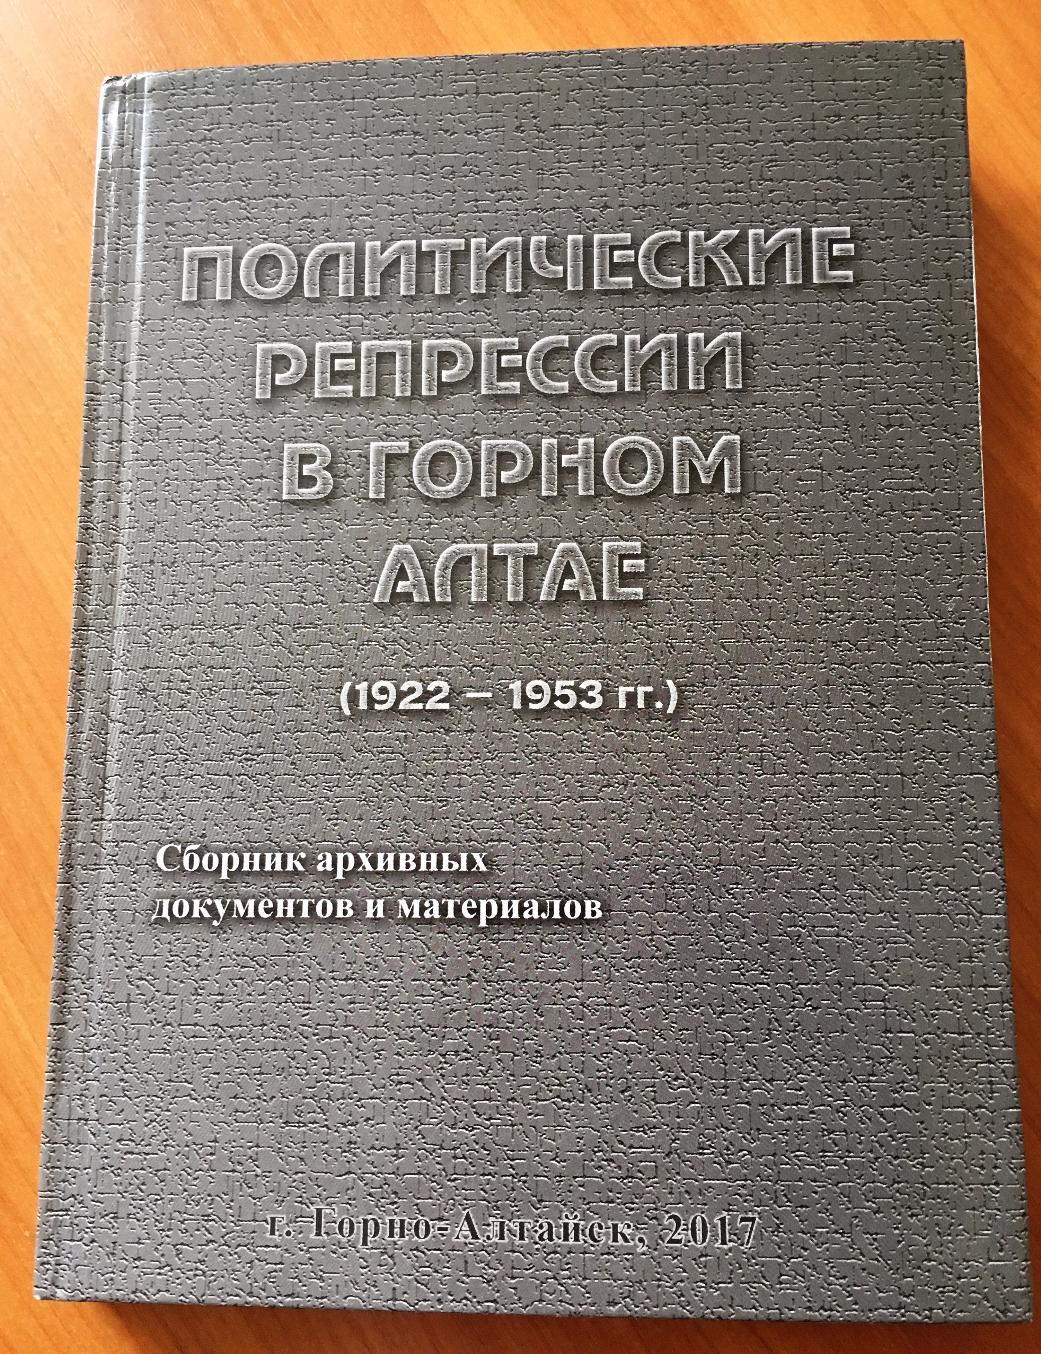 Вышел в свет сборник архивных документов, посвященный жертвам политических репрессий в Горном Алтае